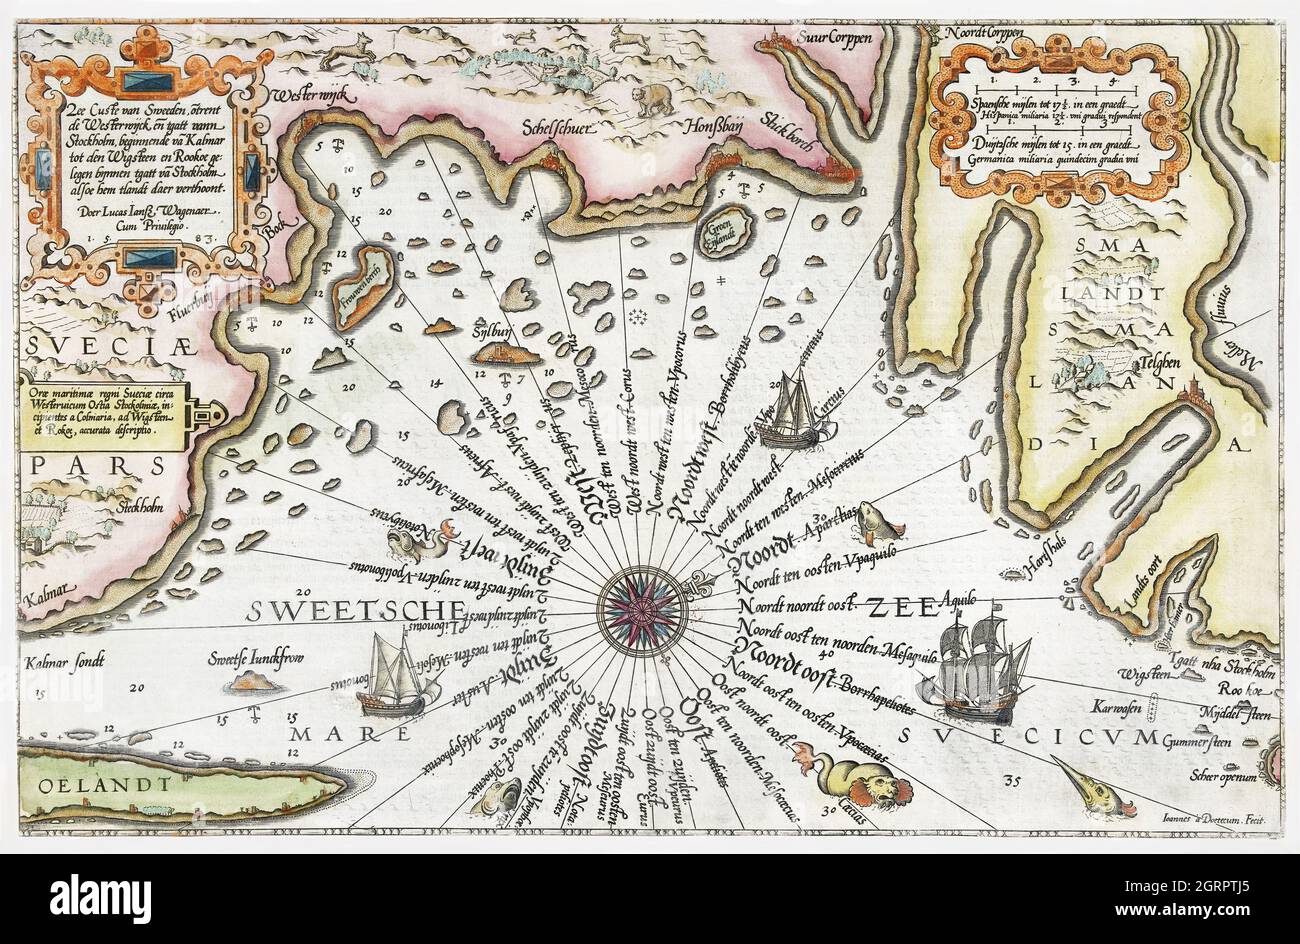 Kaart van de kust van Zweden tussen Kalmar en Stockholm (ca. 1580-1583). Dutch map of the Swedish coast incl. Kalmar and Stockholm. Stock Photo